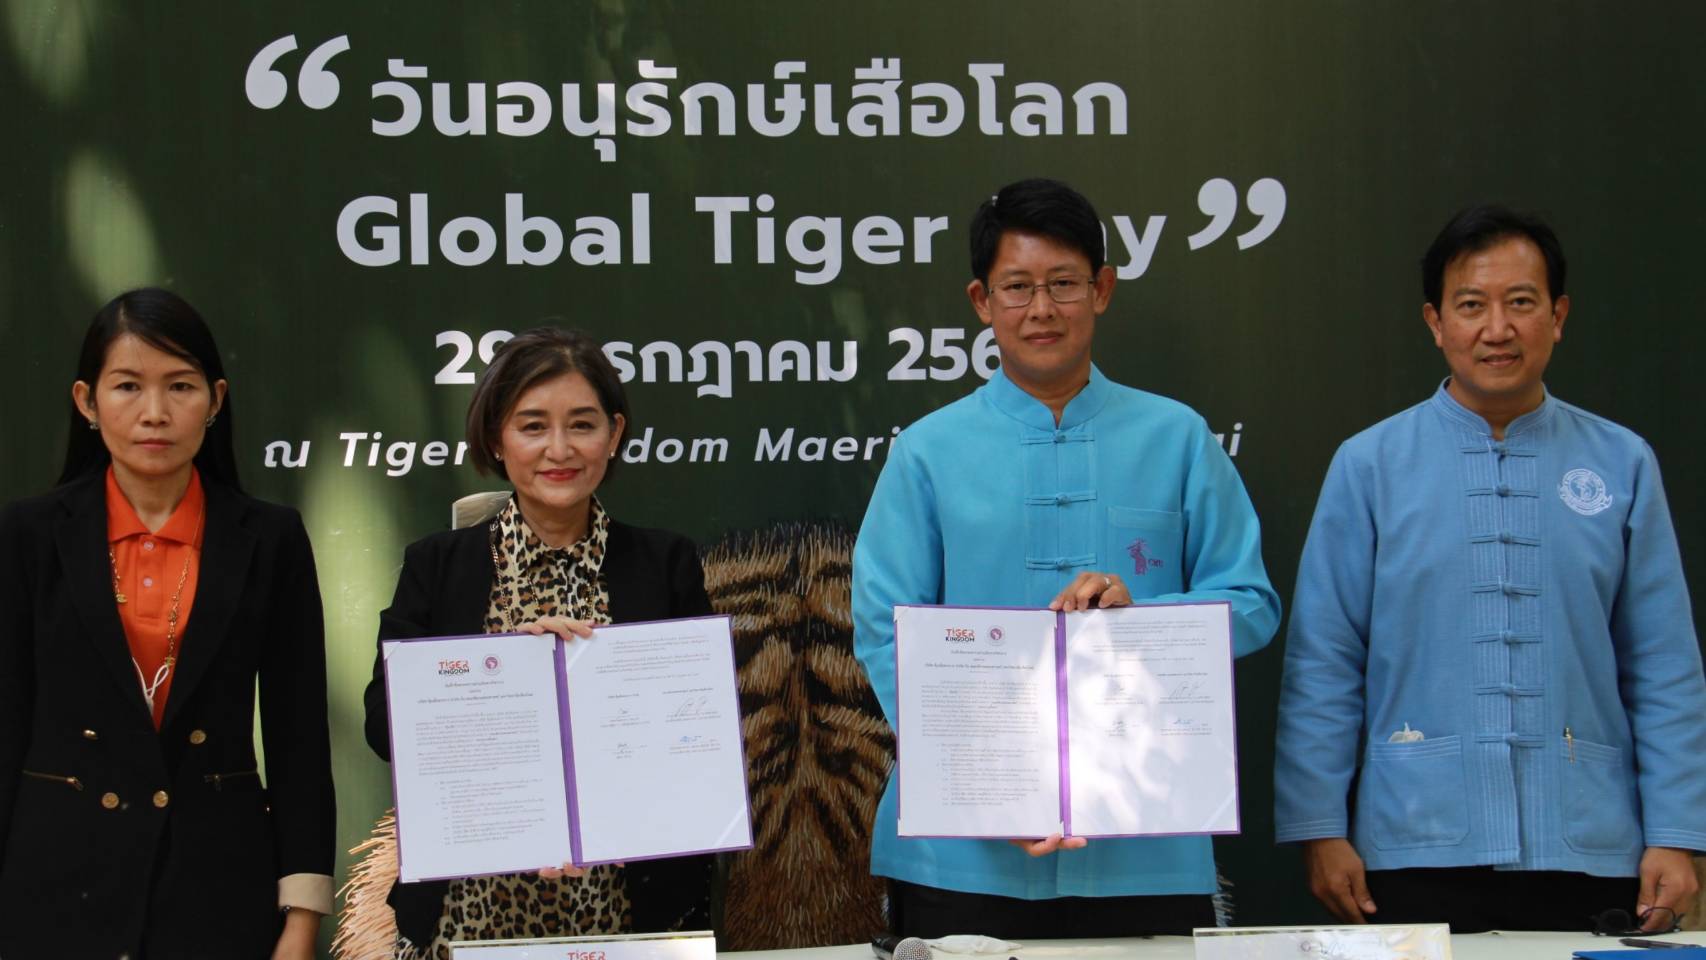 เชียงใหม่ : Tiger kingdom  แถลงข่าวการจัดงานวันอนุรักษ์เสือโลก : Global Tiger Day